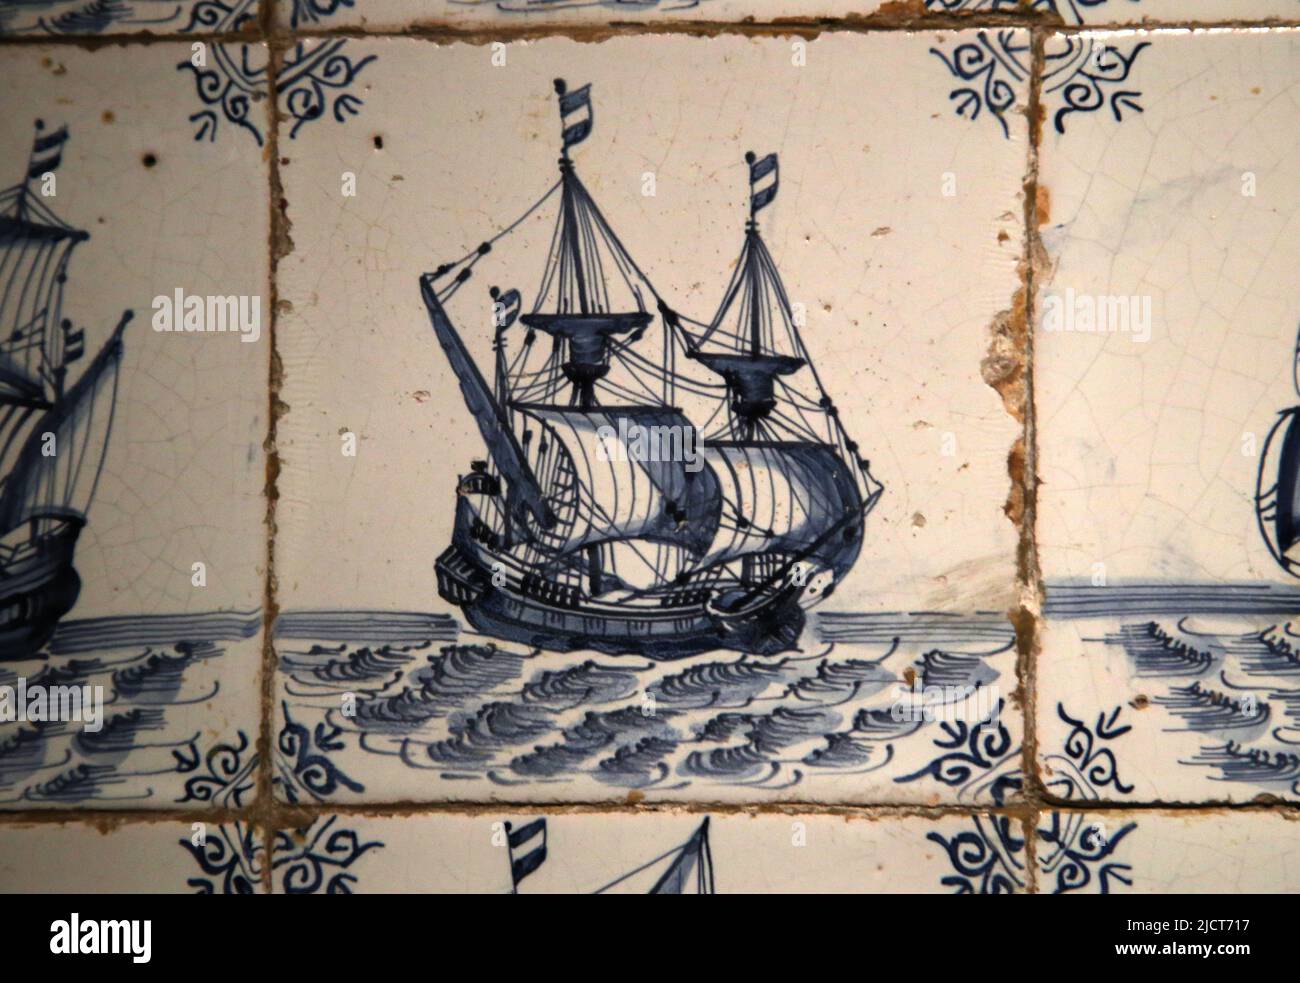 17th secolo. Era moderna. Prodotto olandese. Delfware (terracotta glassata). Decorato con una nave. Rijksmuseum. Amsterdam. Paesi Bassi. Foto Stock